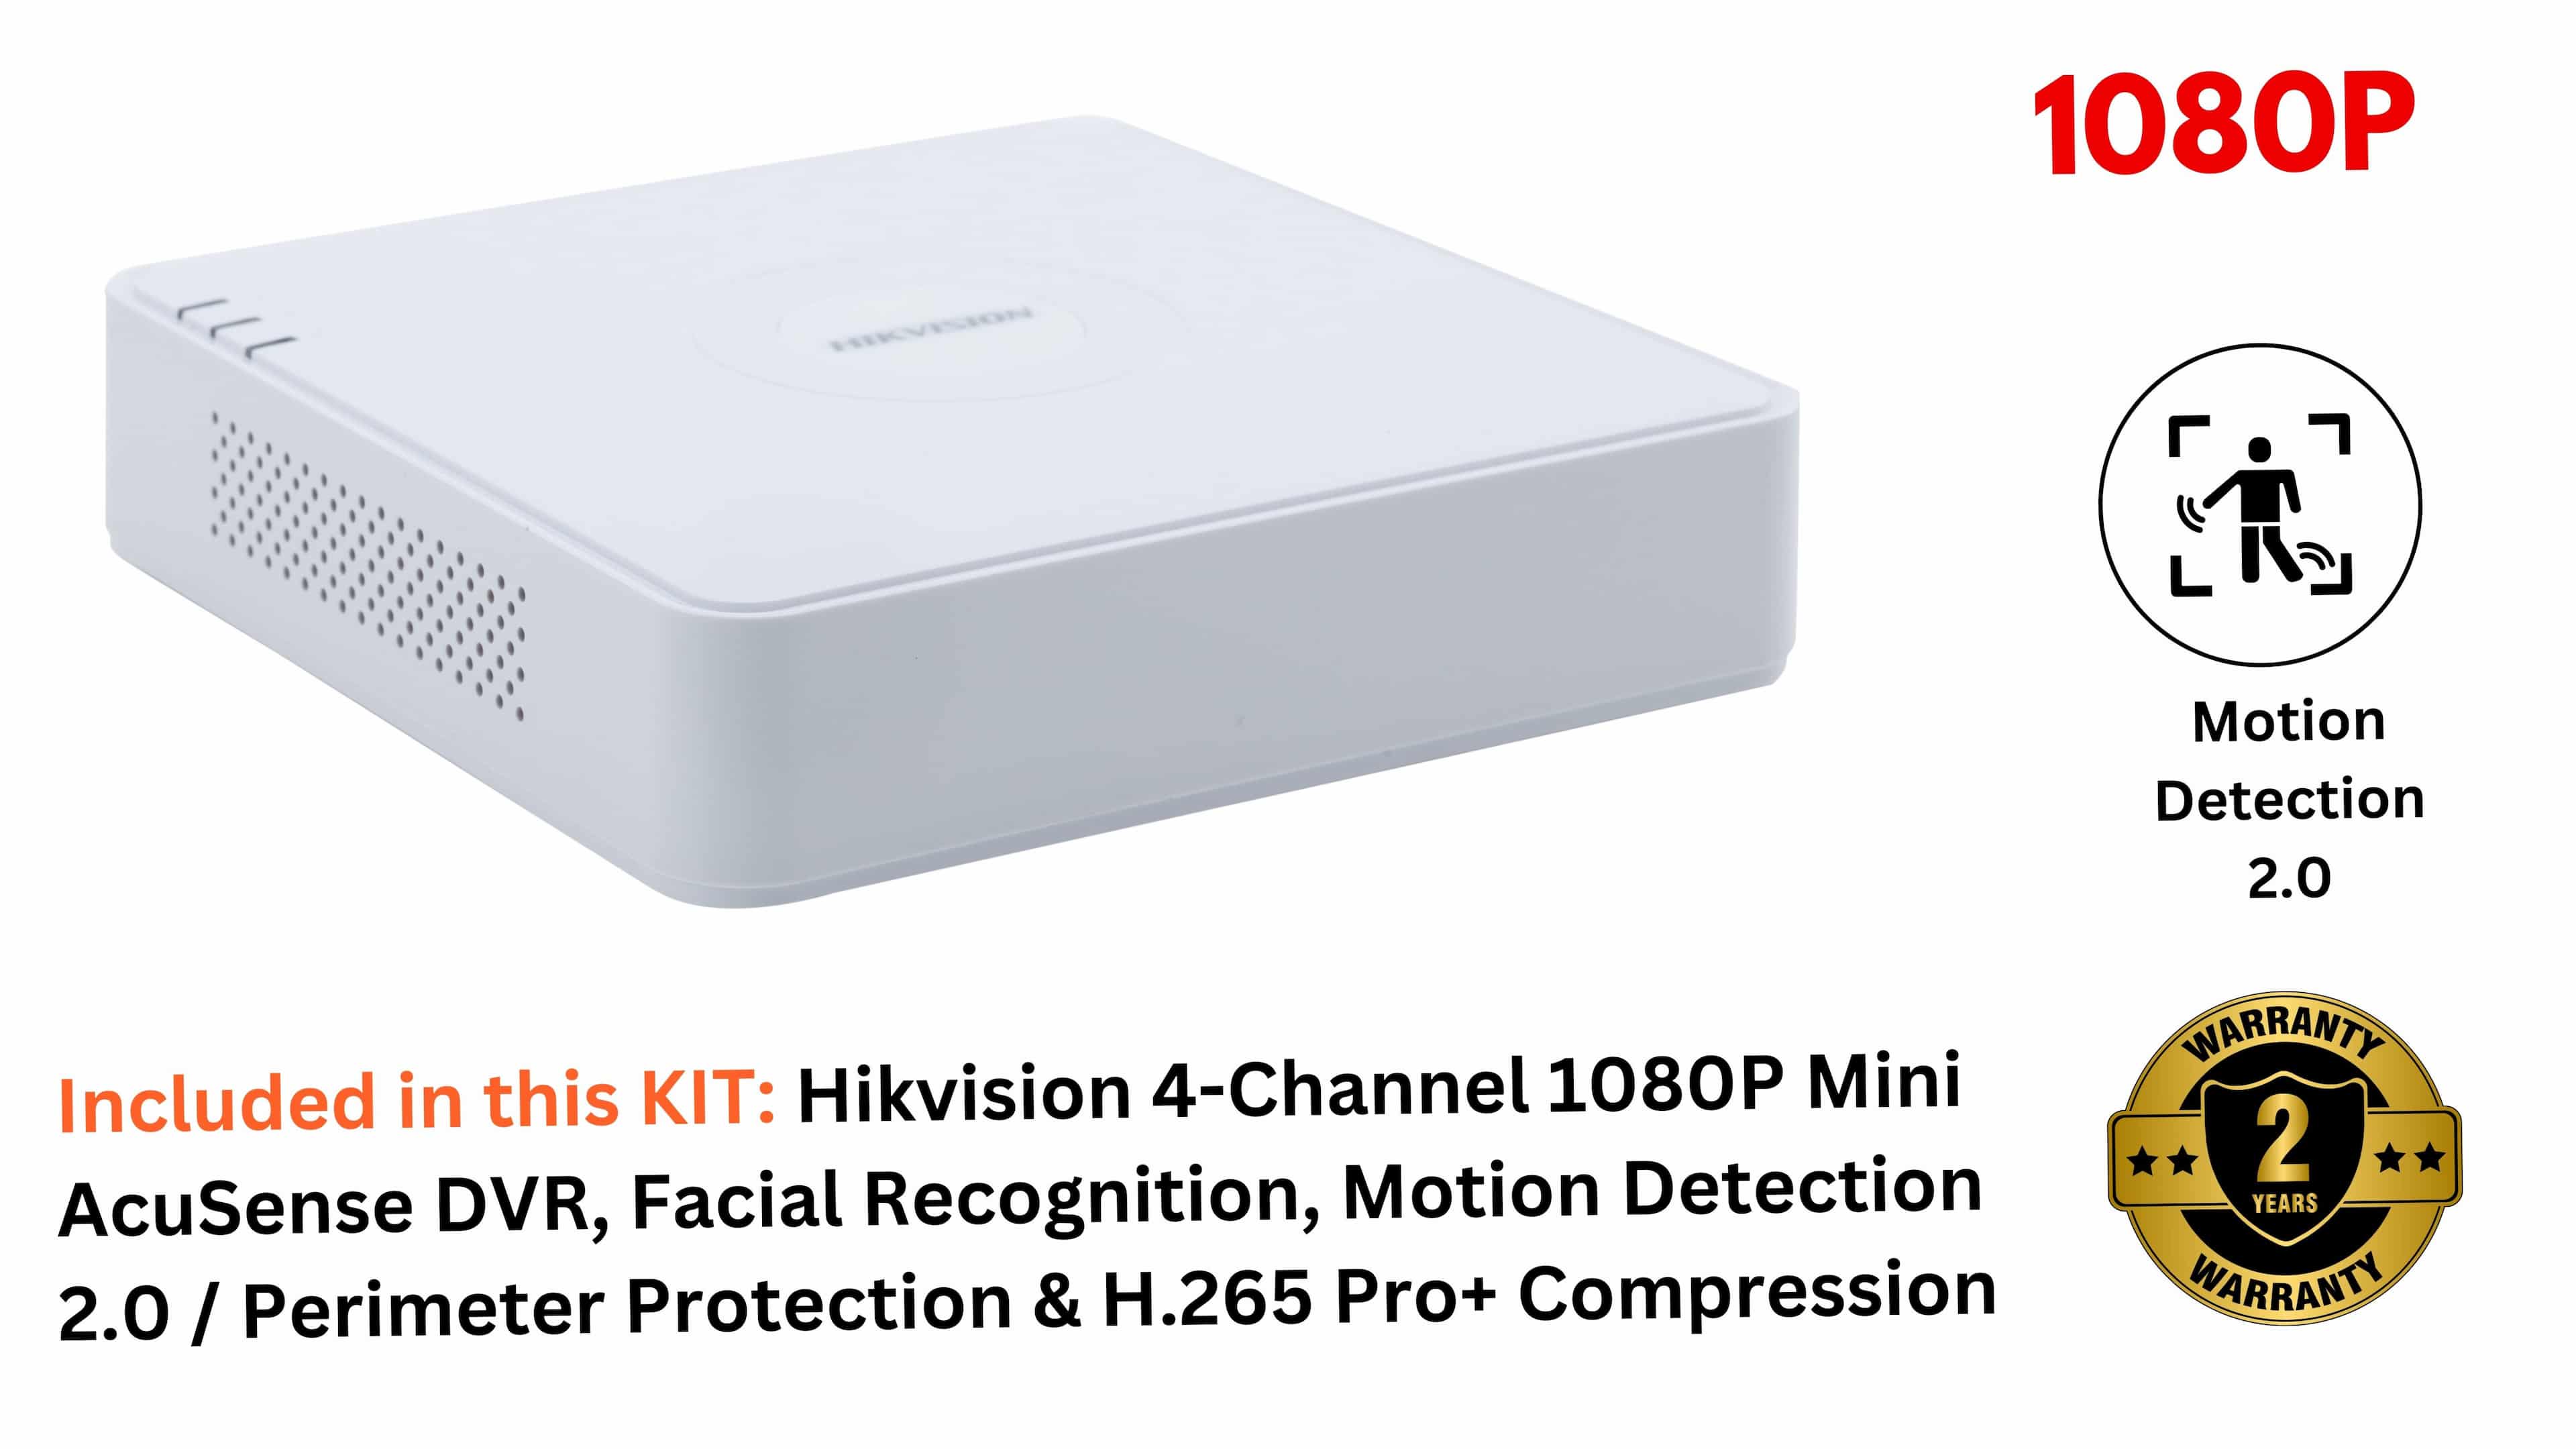 Hikvision 4-Channel 1080p Mini AcuSense DVR, iDS-7104HQHI